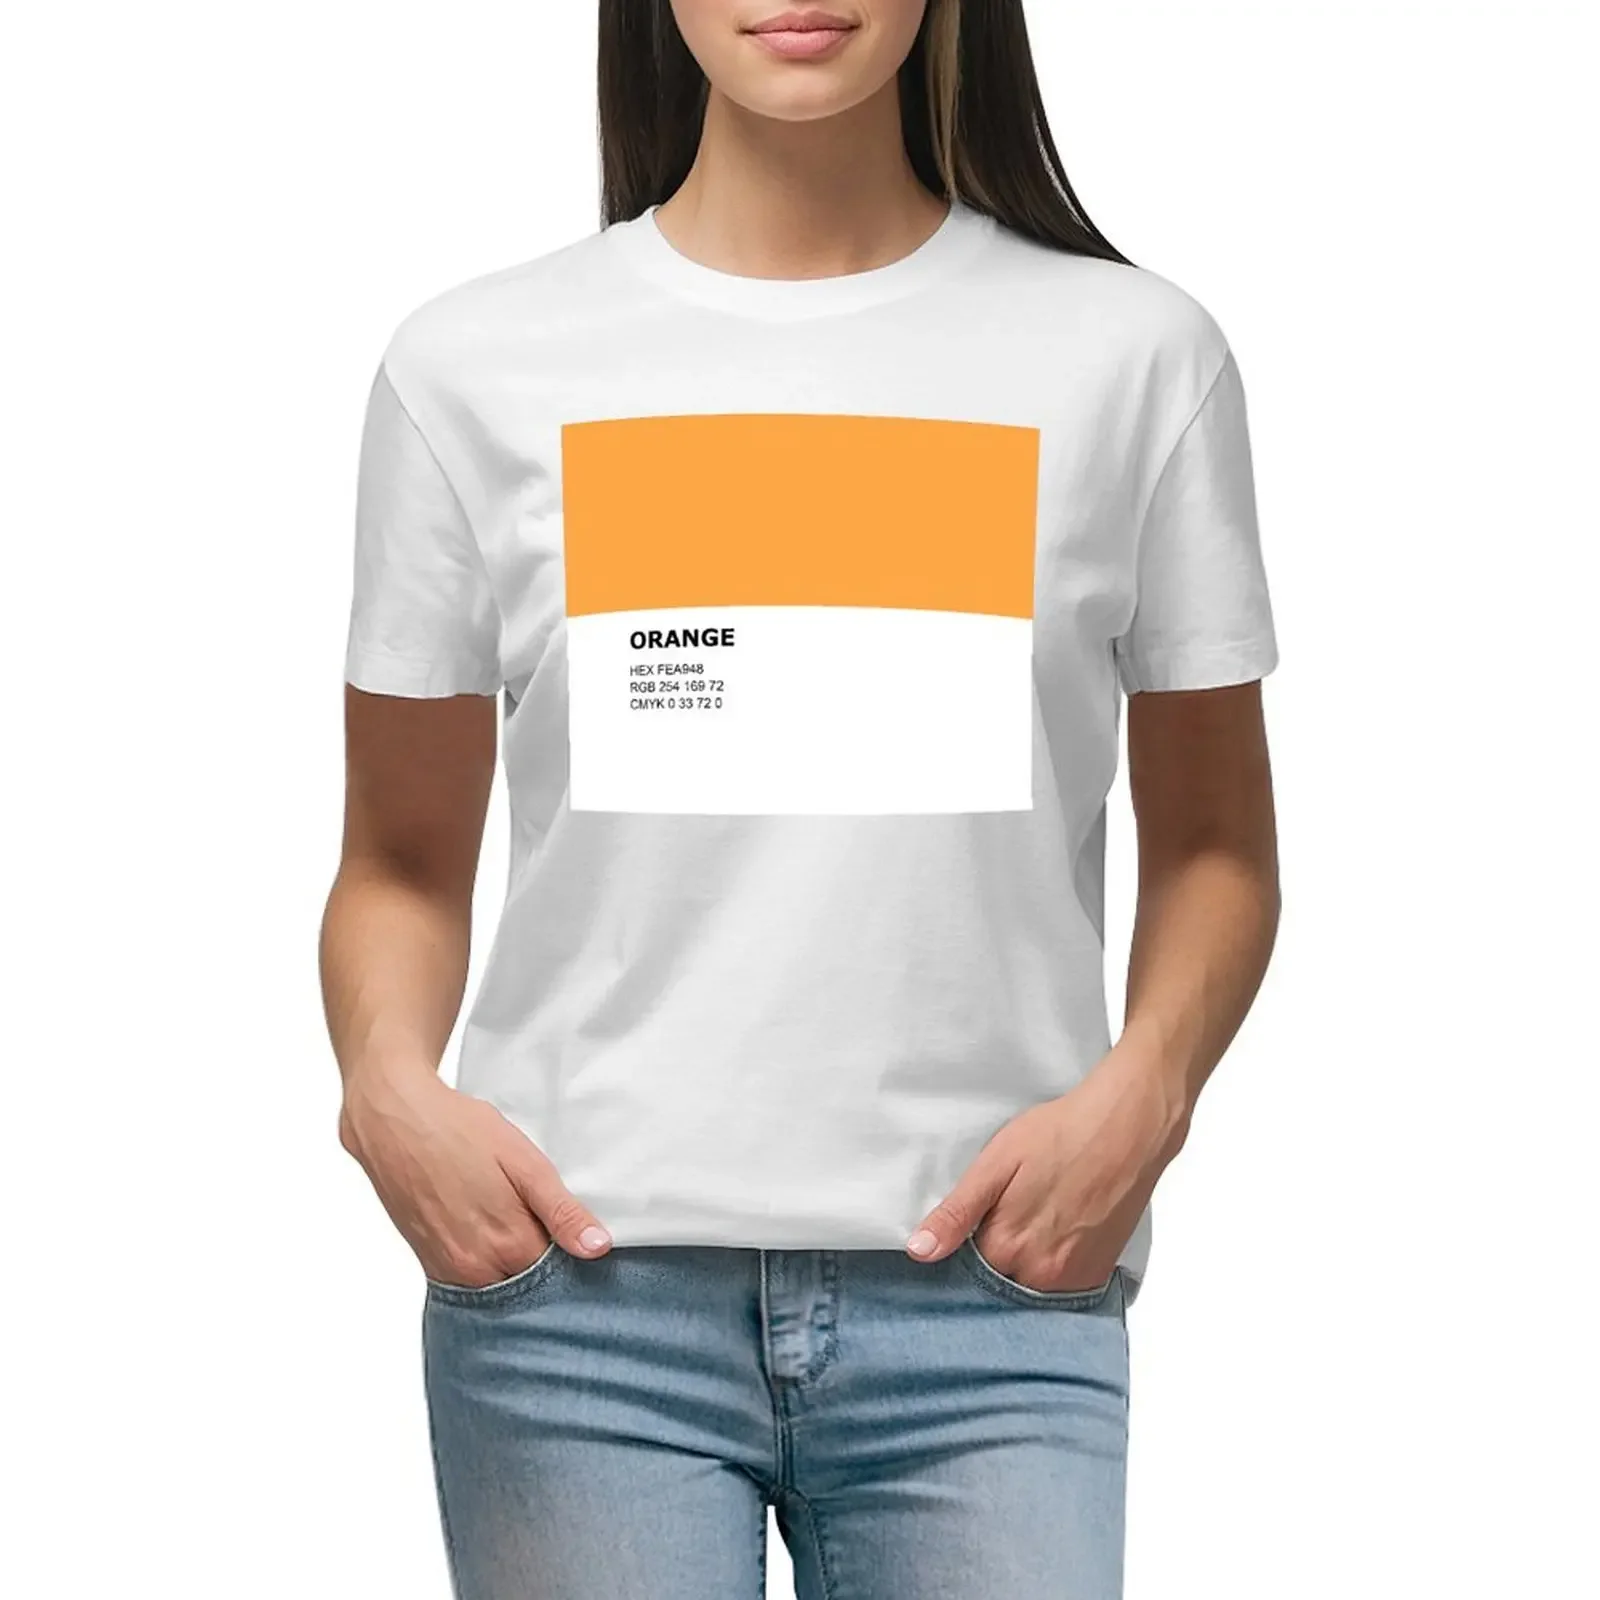 

Orange - Romantic Orange - Color Pantone Colour Design T-shirt graphics hippie clothes white t-shirts for Women